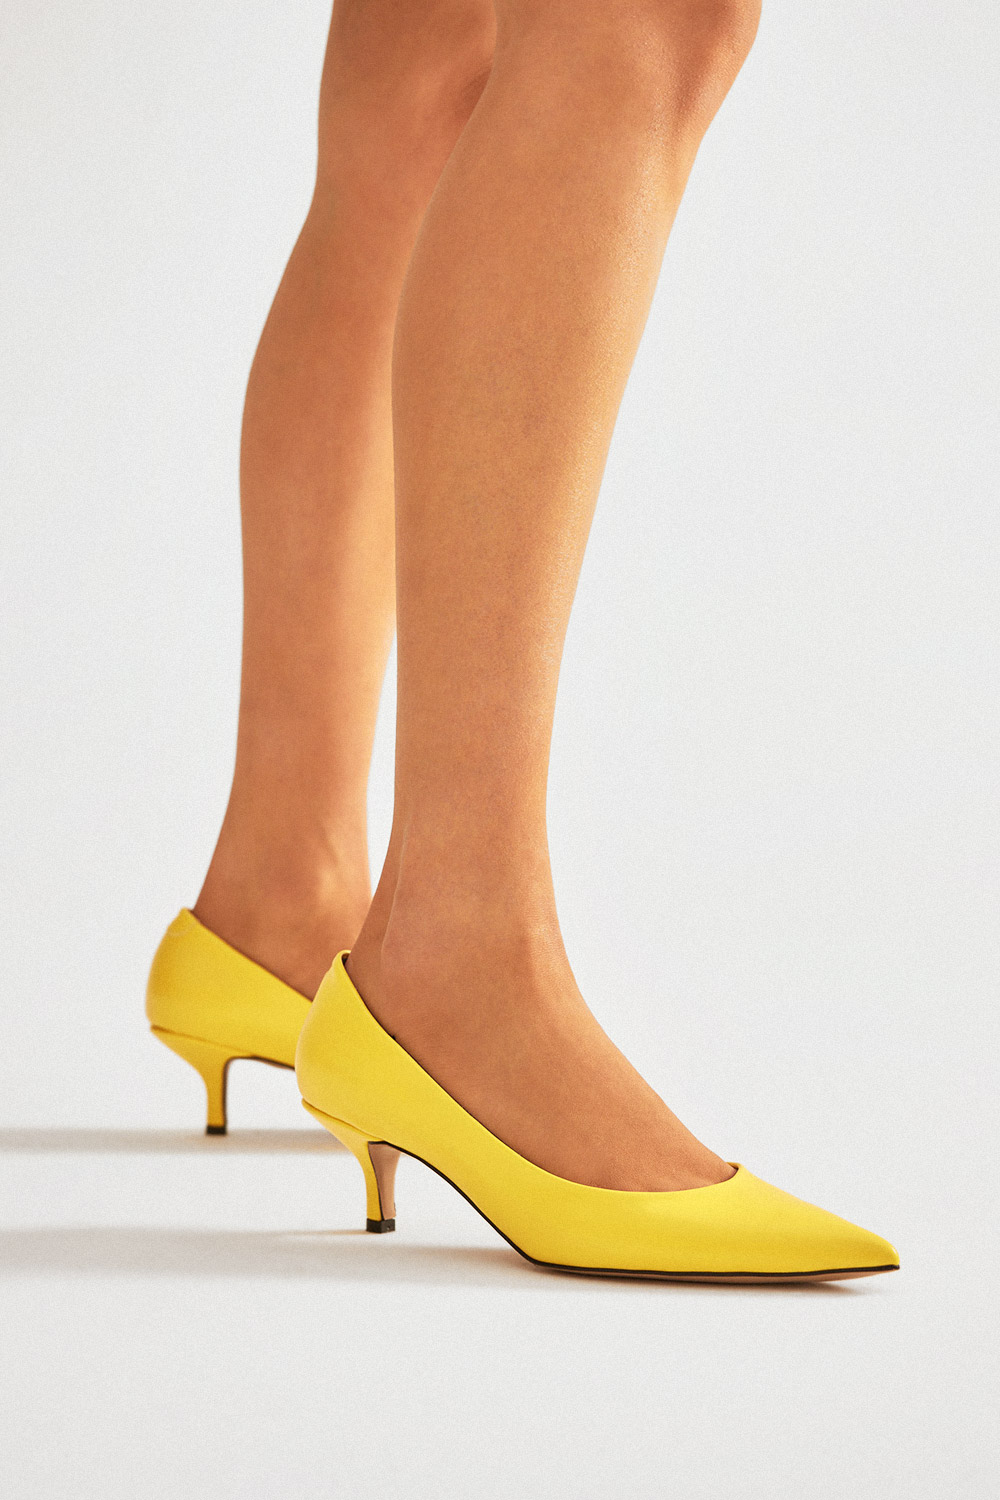 Sophia Sivri Burun Stiletto Sarı Kadın Topuklu